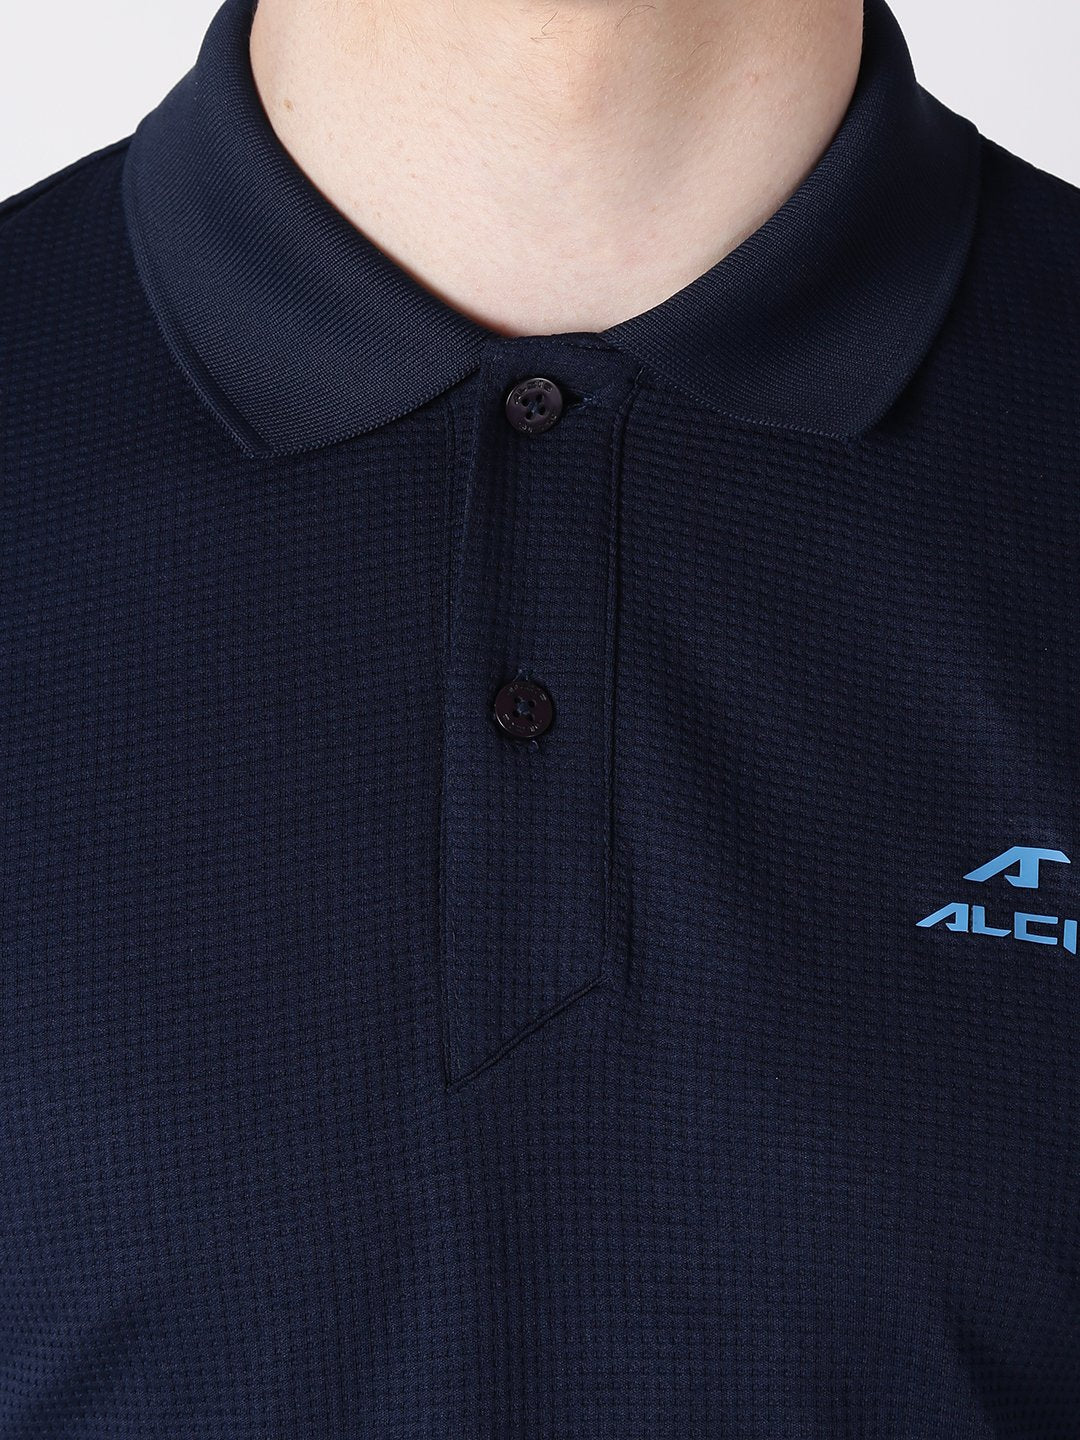 Alcis Men Navy Blue Self Design Polo Collar T-shirt ALTMP134526-S